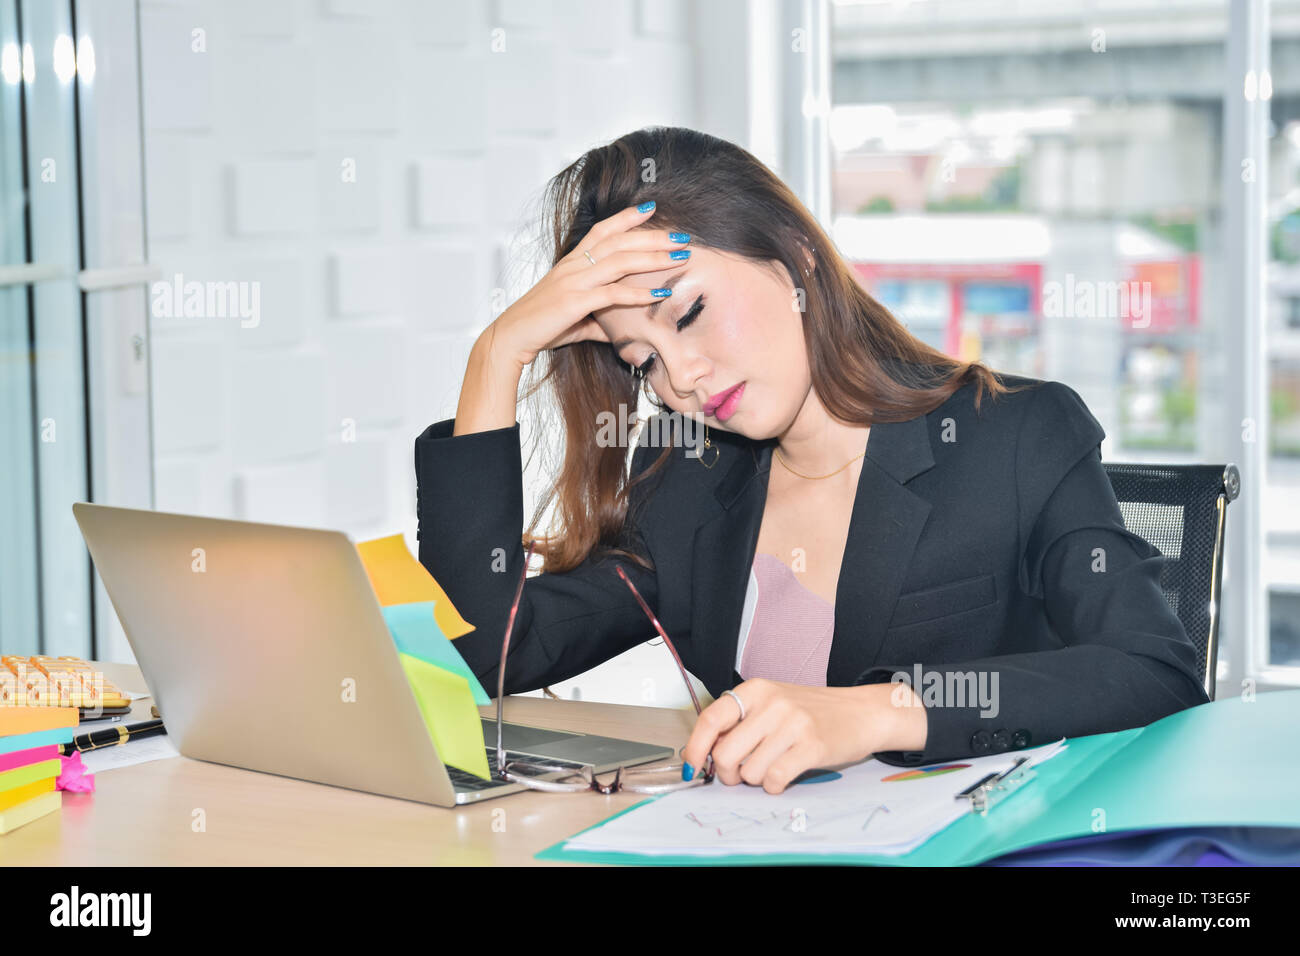 Subrayó mujer de negocios sentada y sosteniendo la cabeza a causa de dolor cefalea en oficina moderna Foto de stock